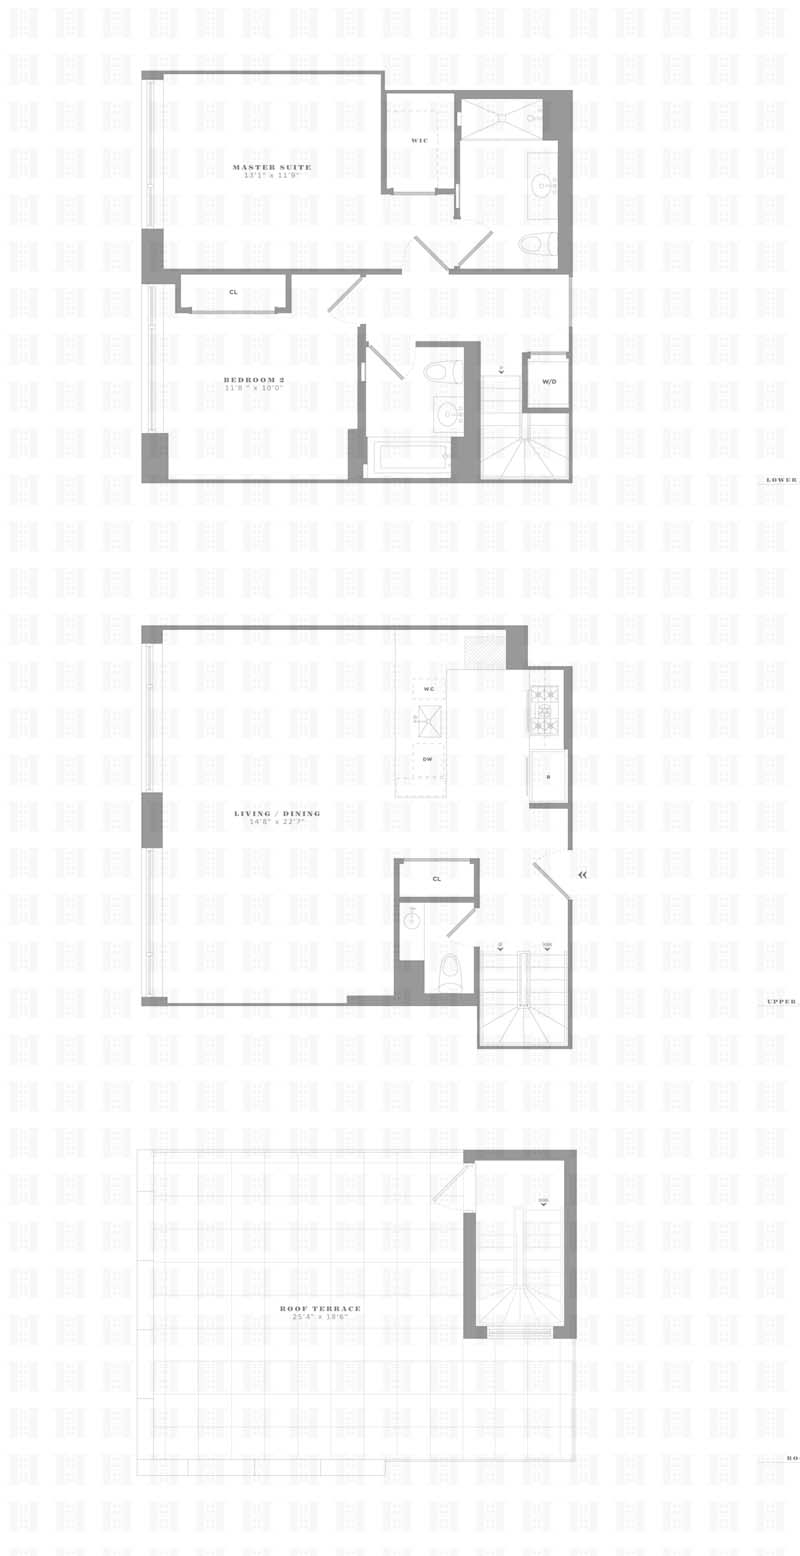 Floorplan for 610 Warren Street, PHF